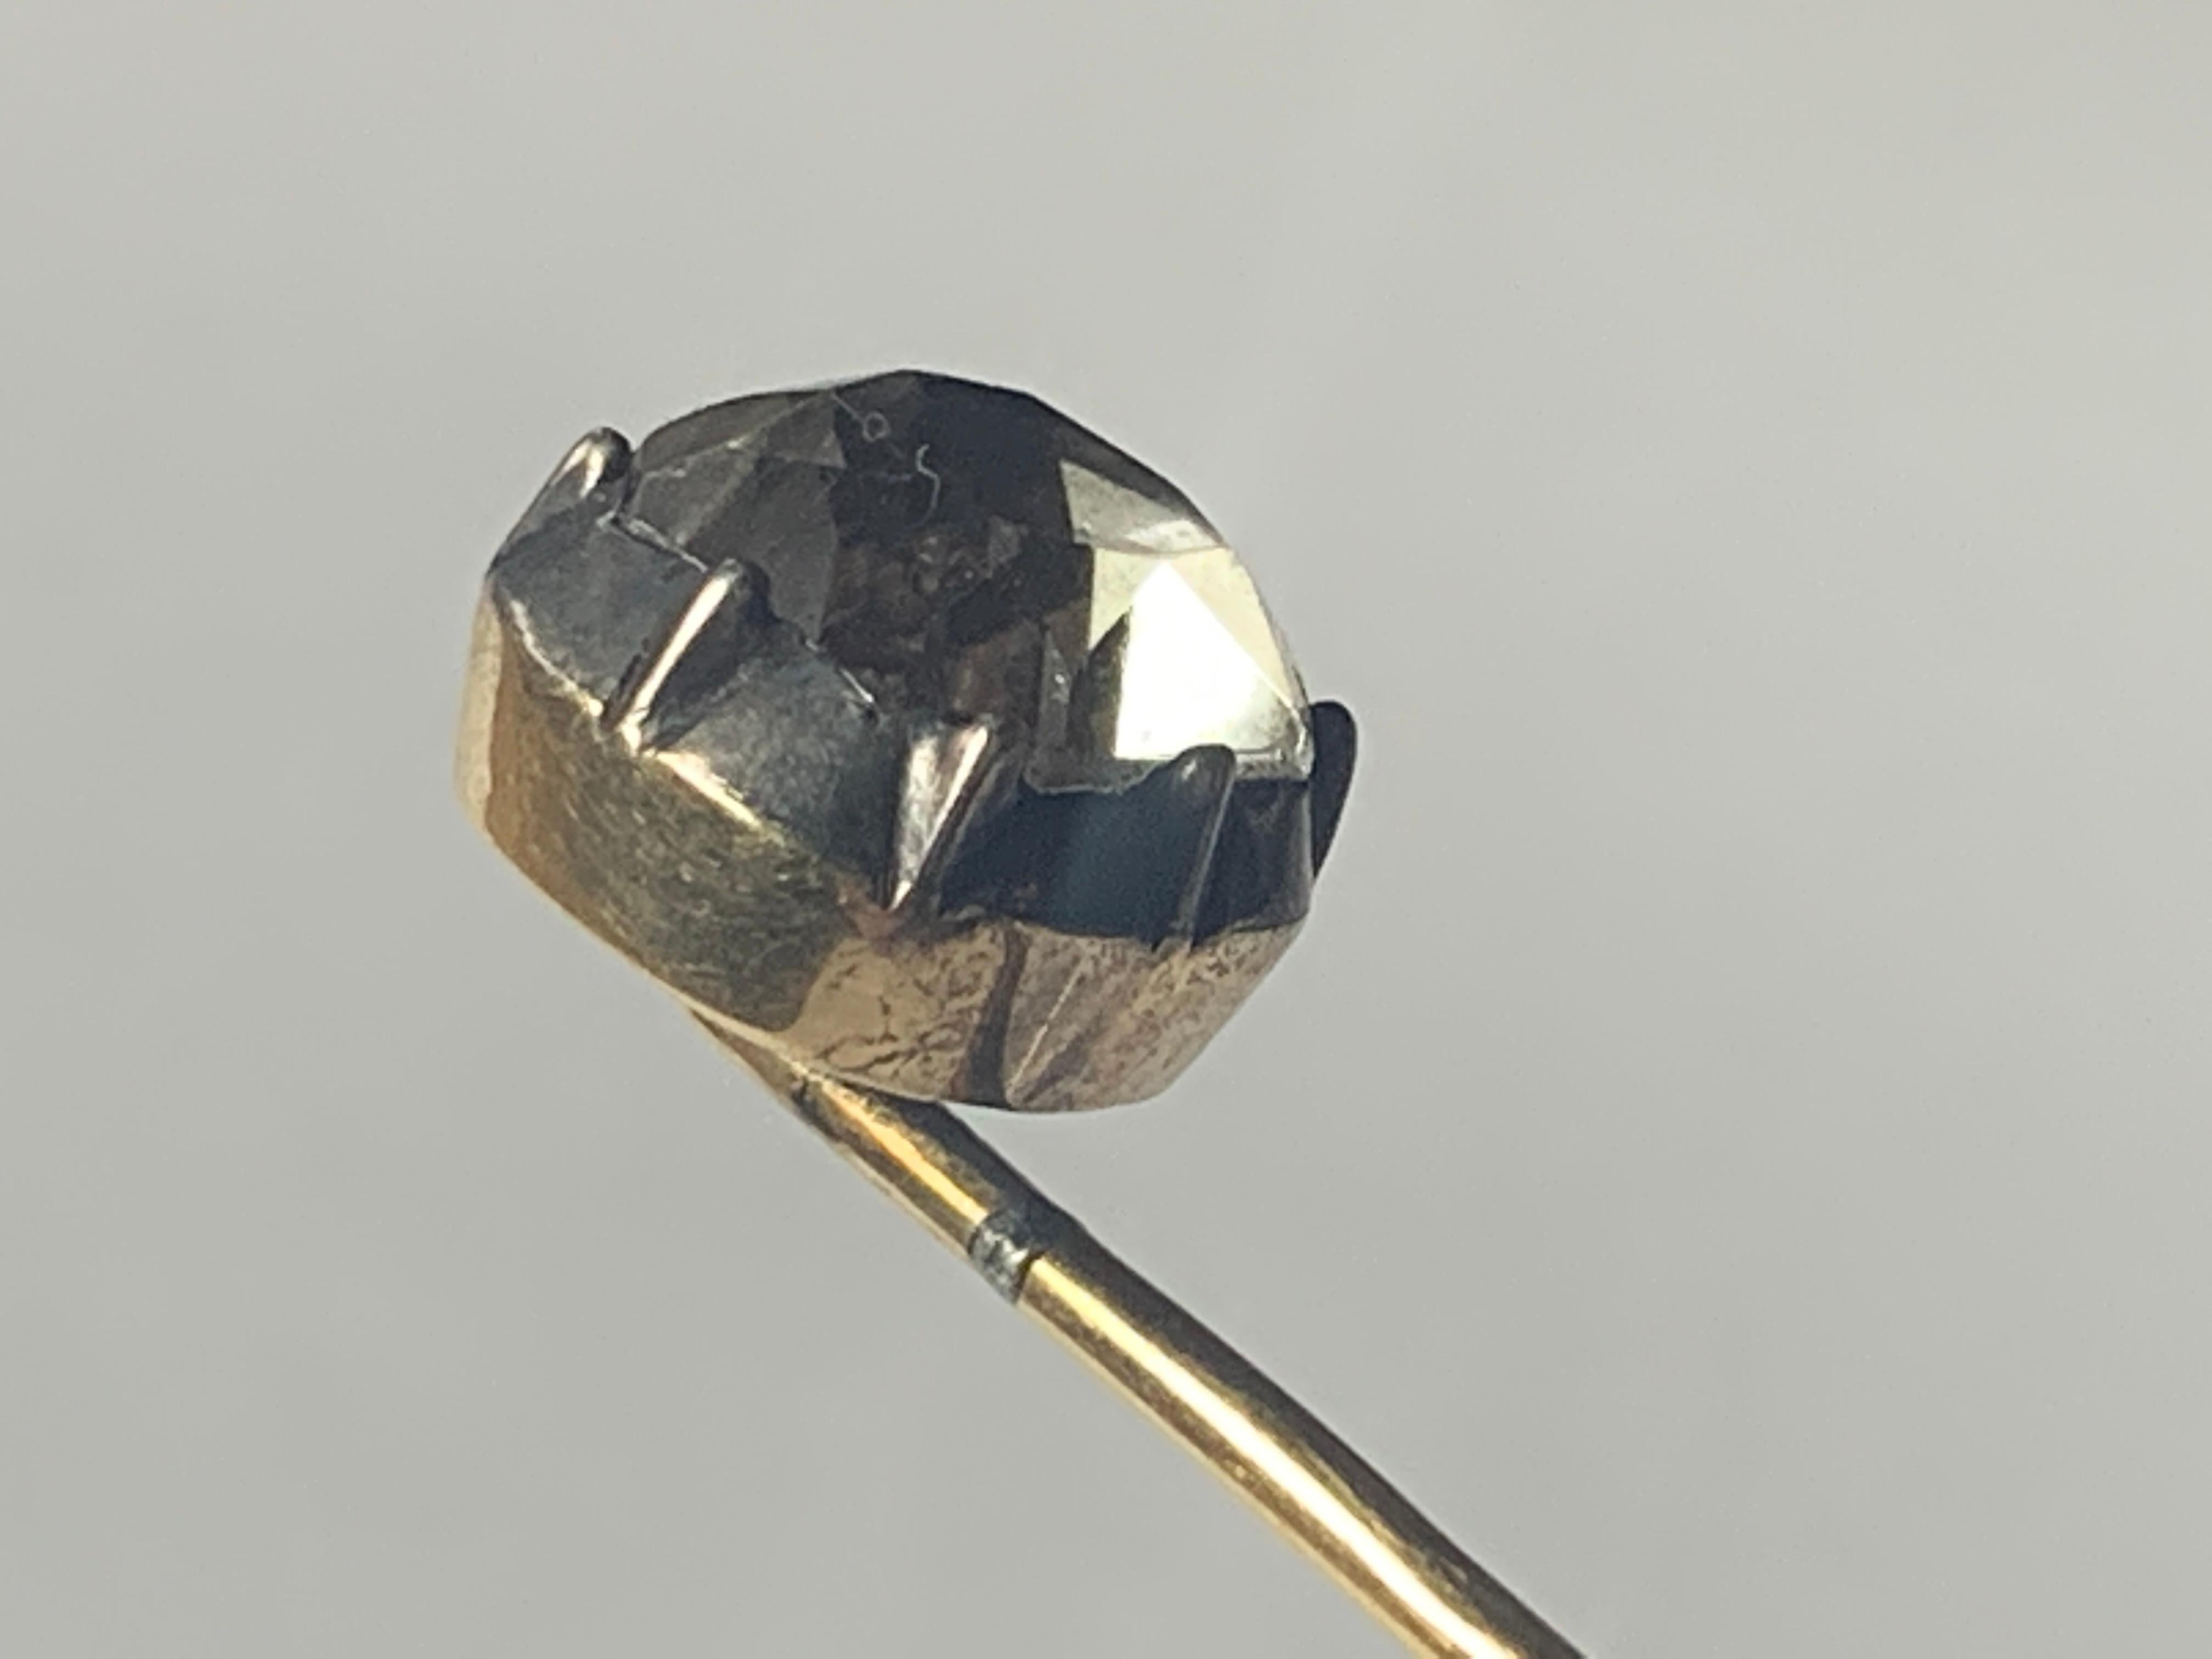 Antique
Épingle en or 15ct à points noirs en quartz géorgien 
Produit vers les années 1800
La monture en or massif 15ct (y compris l'épingle) maintient ce magnifique objet.
Pierre de quartz noir en forme de coussin, taillée à l'ancienne.
En très bon